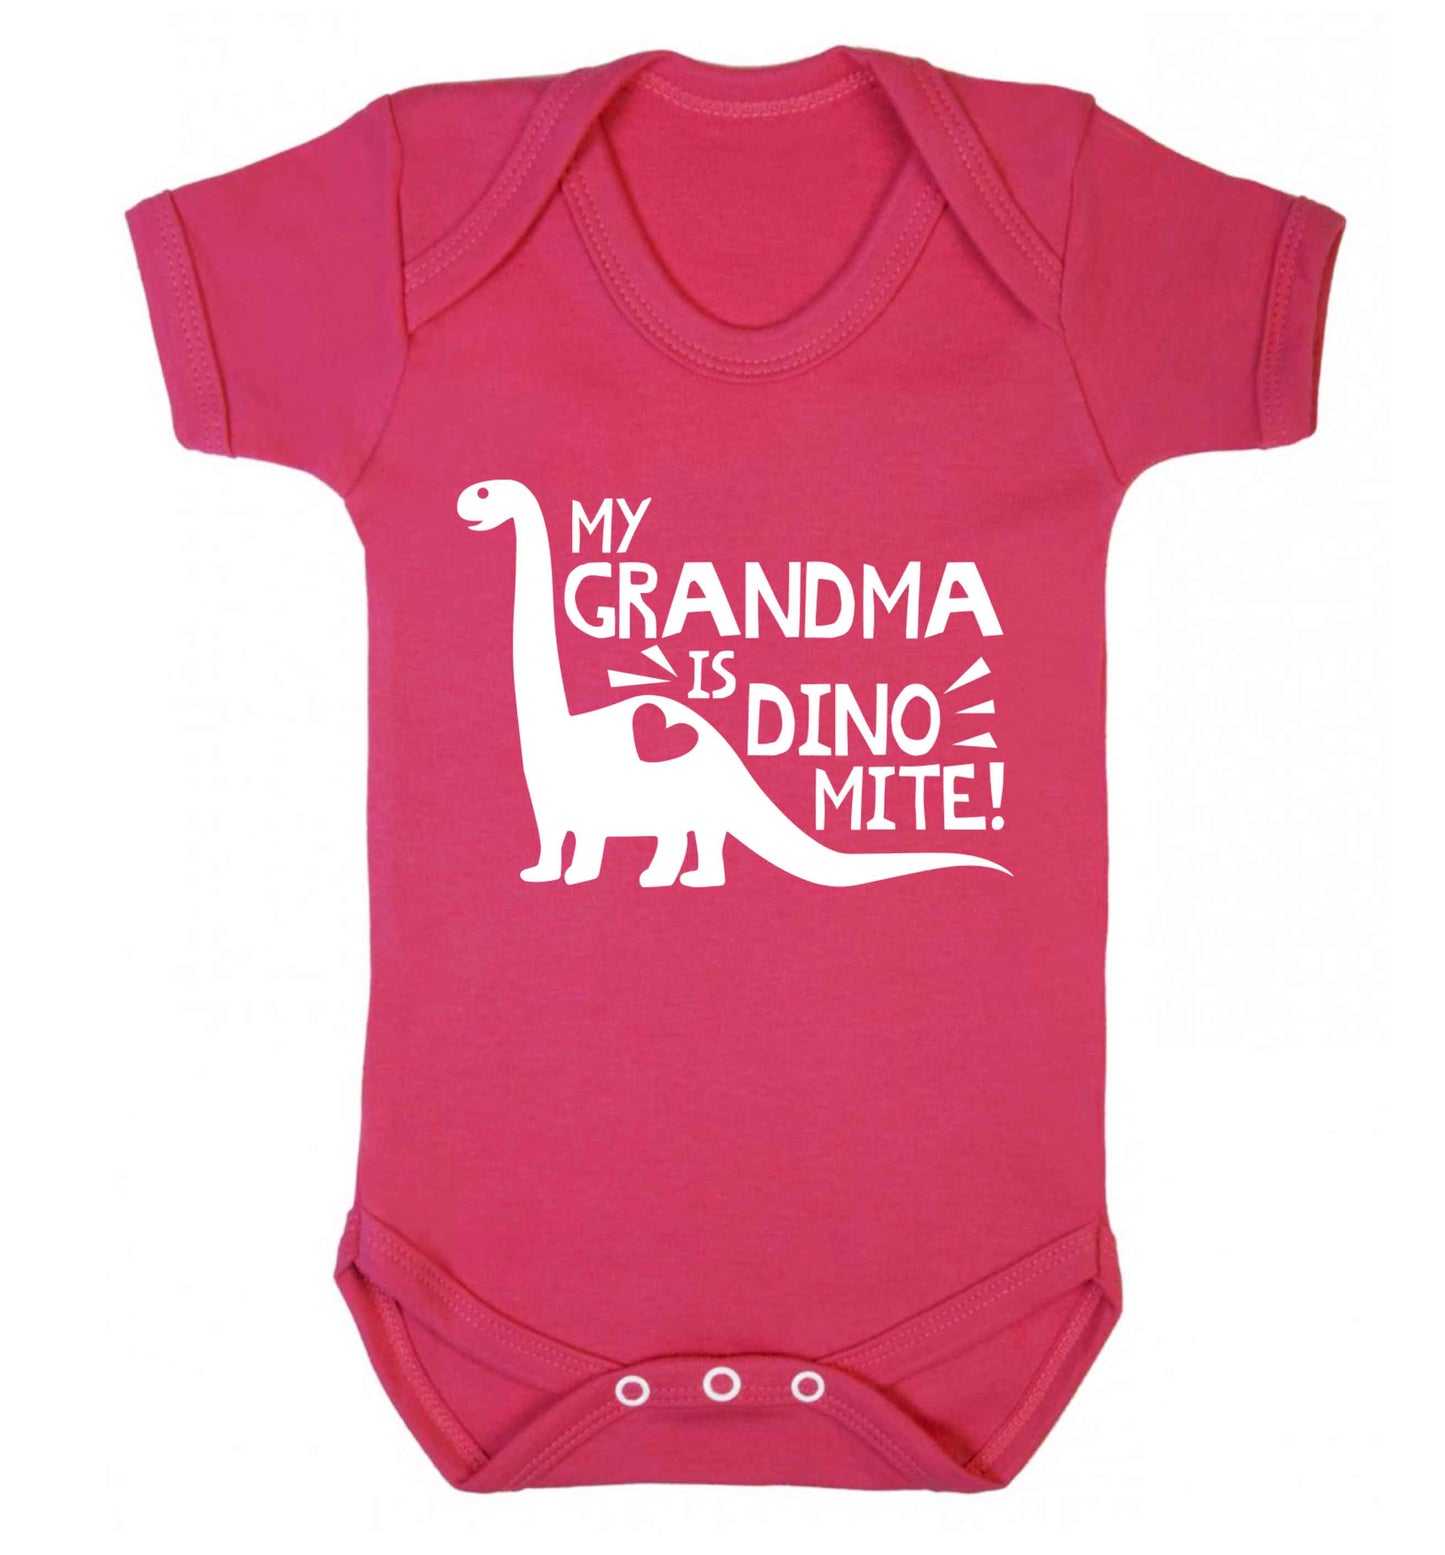 My grandma is dinomite! Baby Vest dark pink 18-24 months